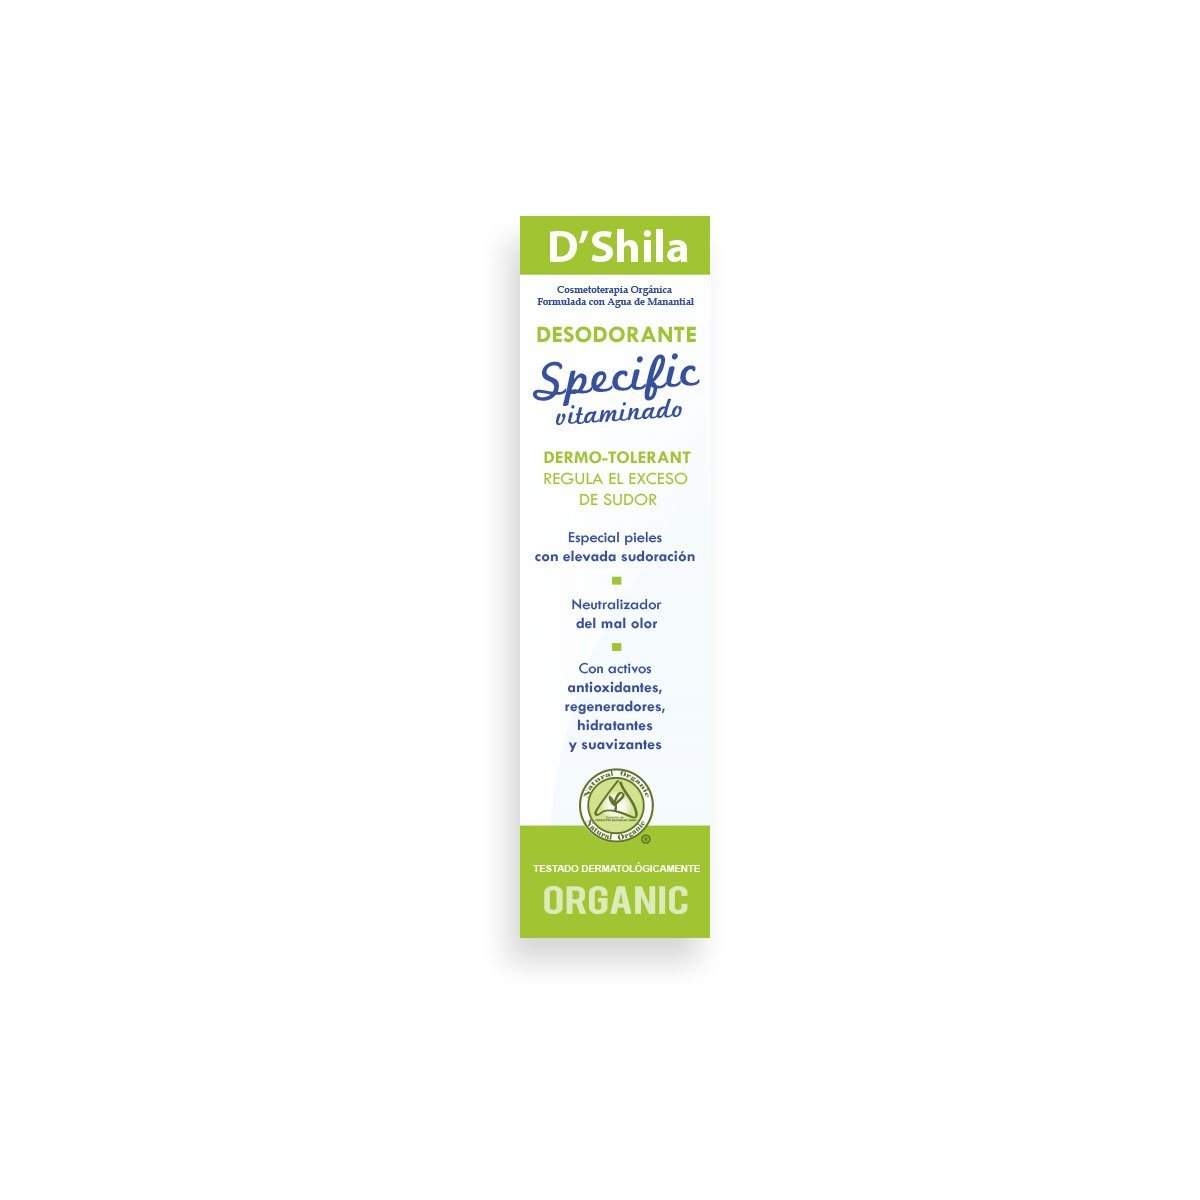 Desodorante Specific 50 ml | DShila - Dietetica Ferrer